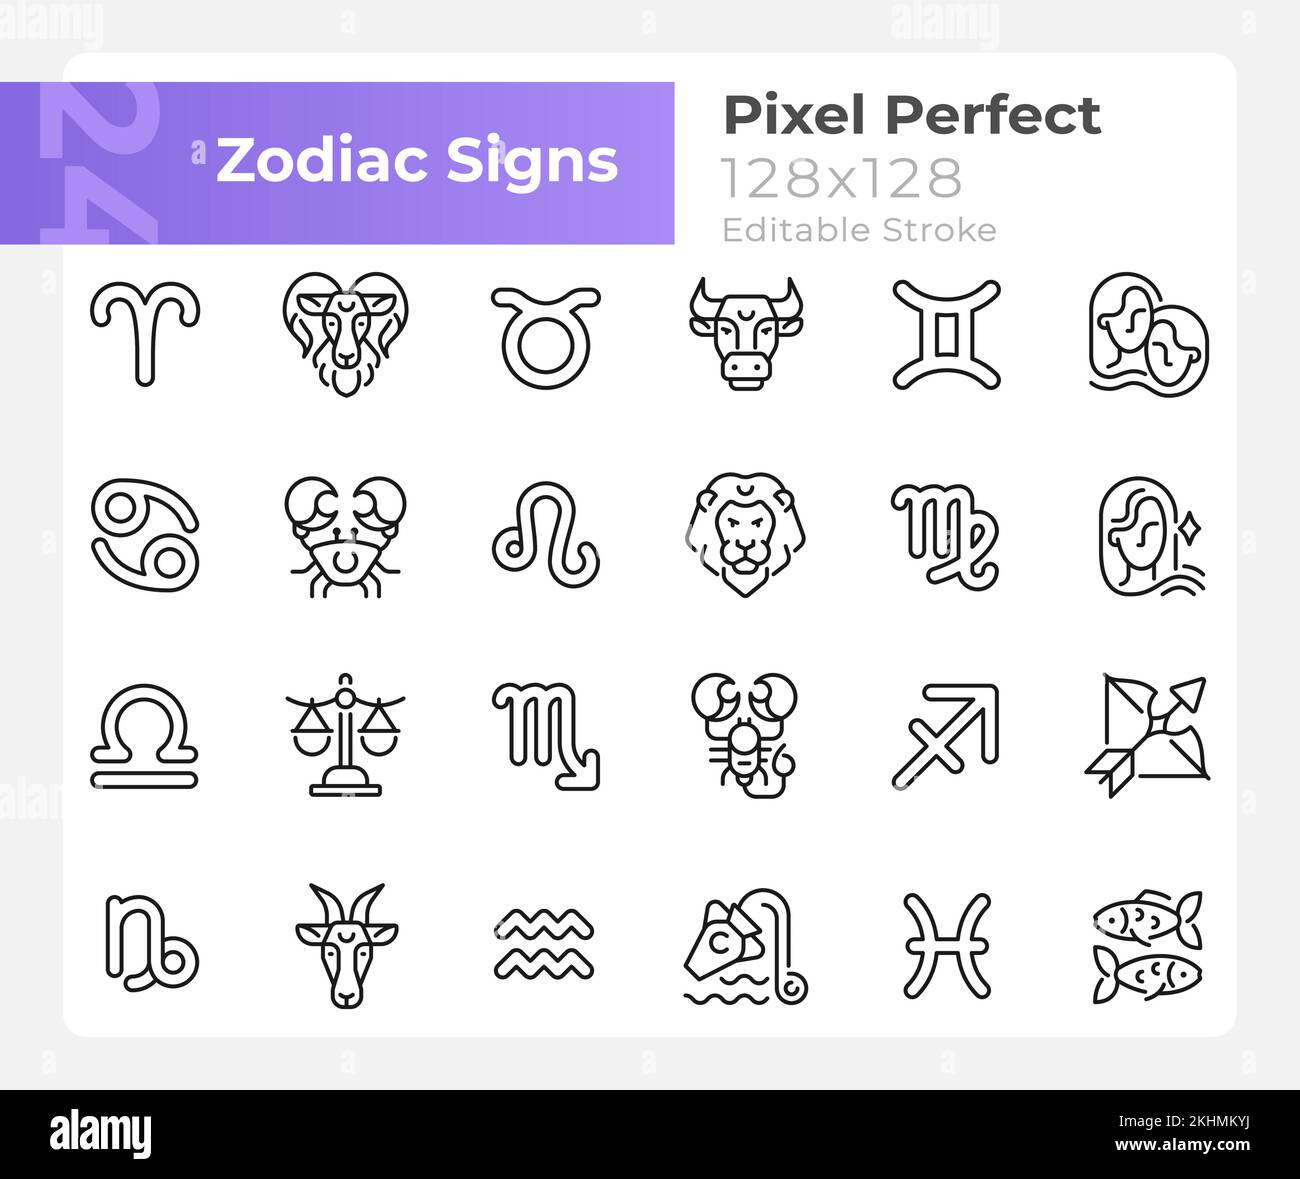 Zodiac segni pixel perfetto lineare grandi icone set Illustrazione Vettoriale